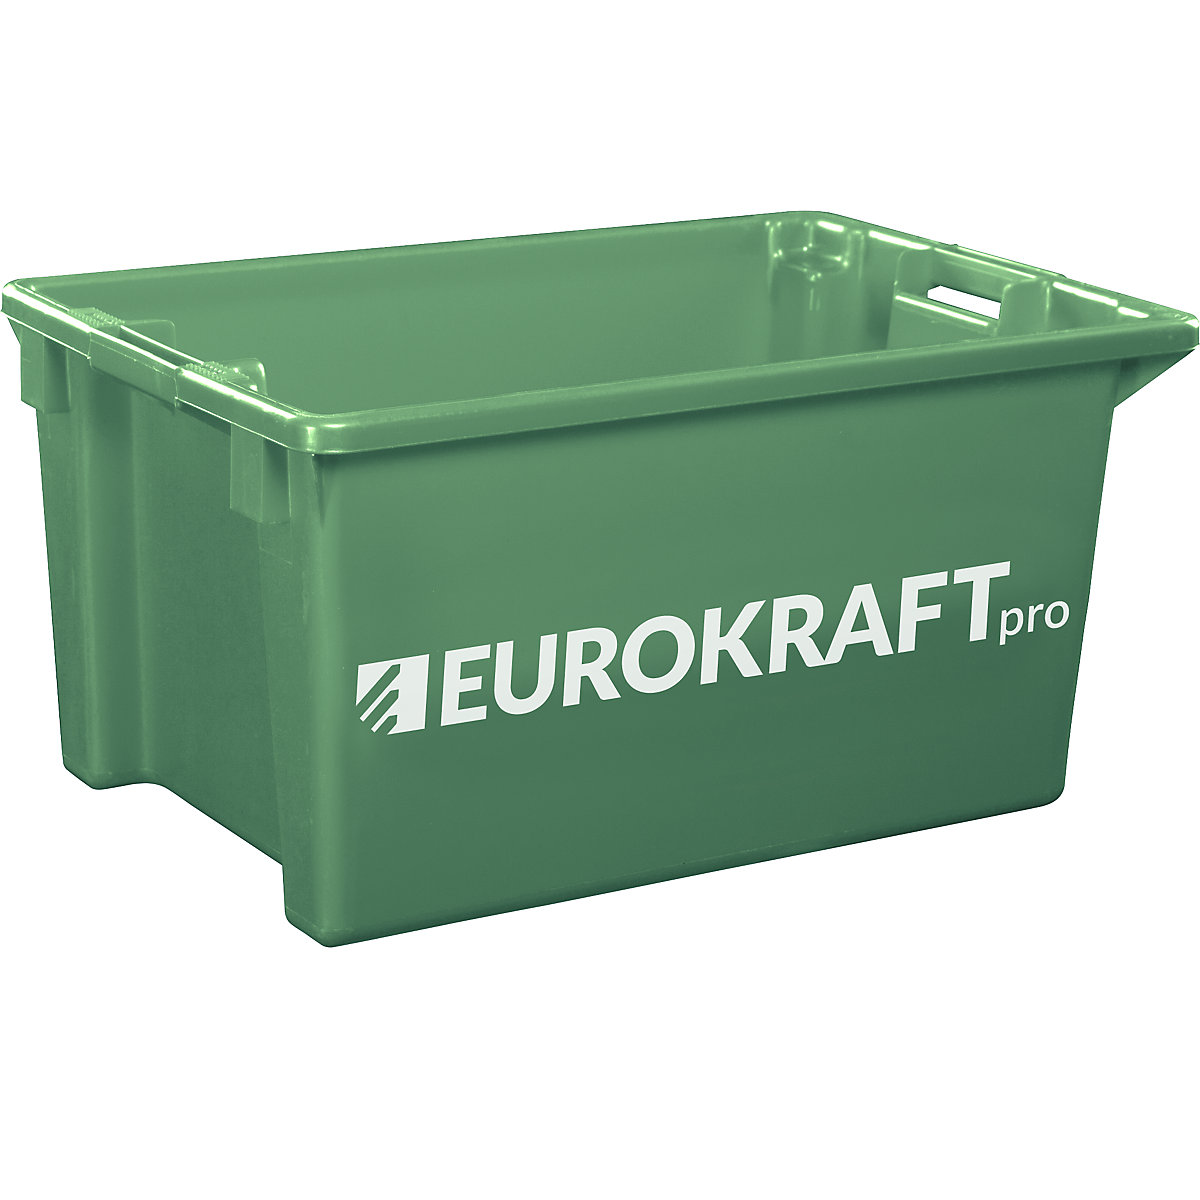 EUROKRAFTpro – Otočná stohovacia nádoba z polypropylénu vhodného pre potraviny, objem 70 litrov, OJ 2 ks, steny a dno uzatvorené, zelená